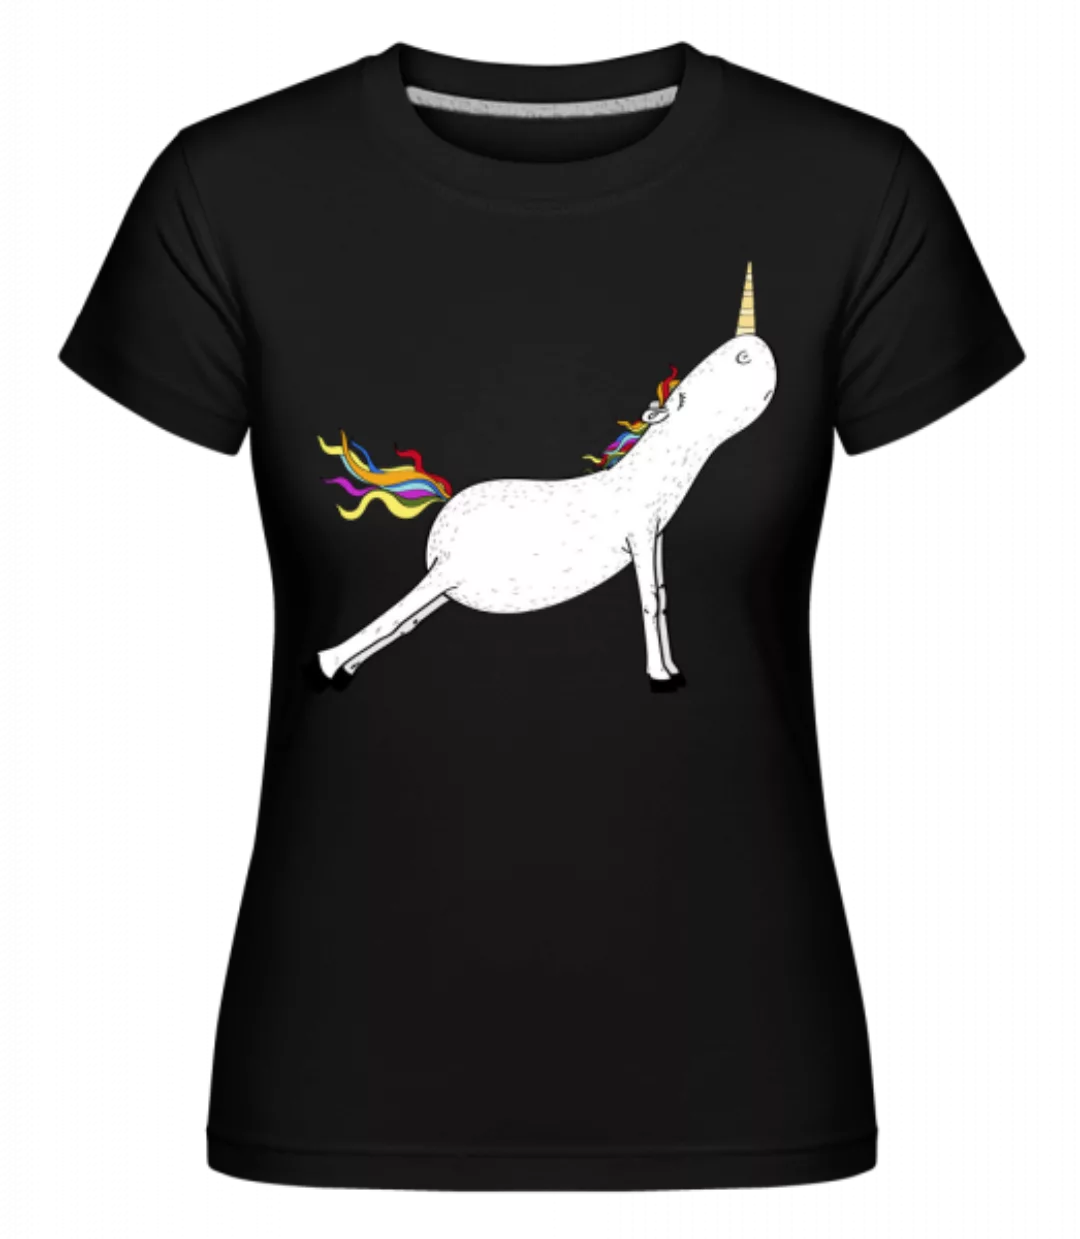 Yoga Einhorn Bretthaltung · Shirtinator Frauen T-Shirt günstig online kaufen